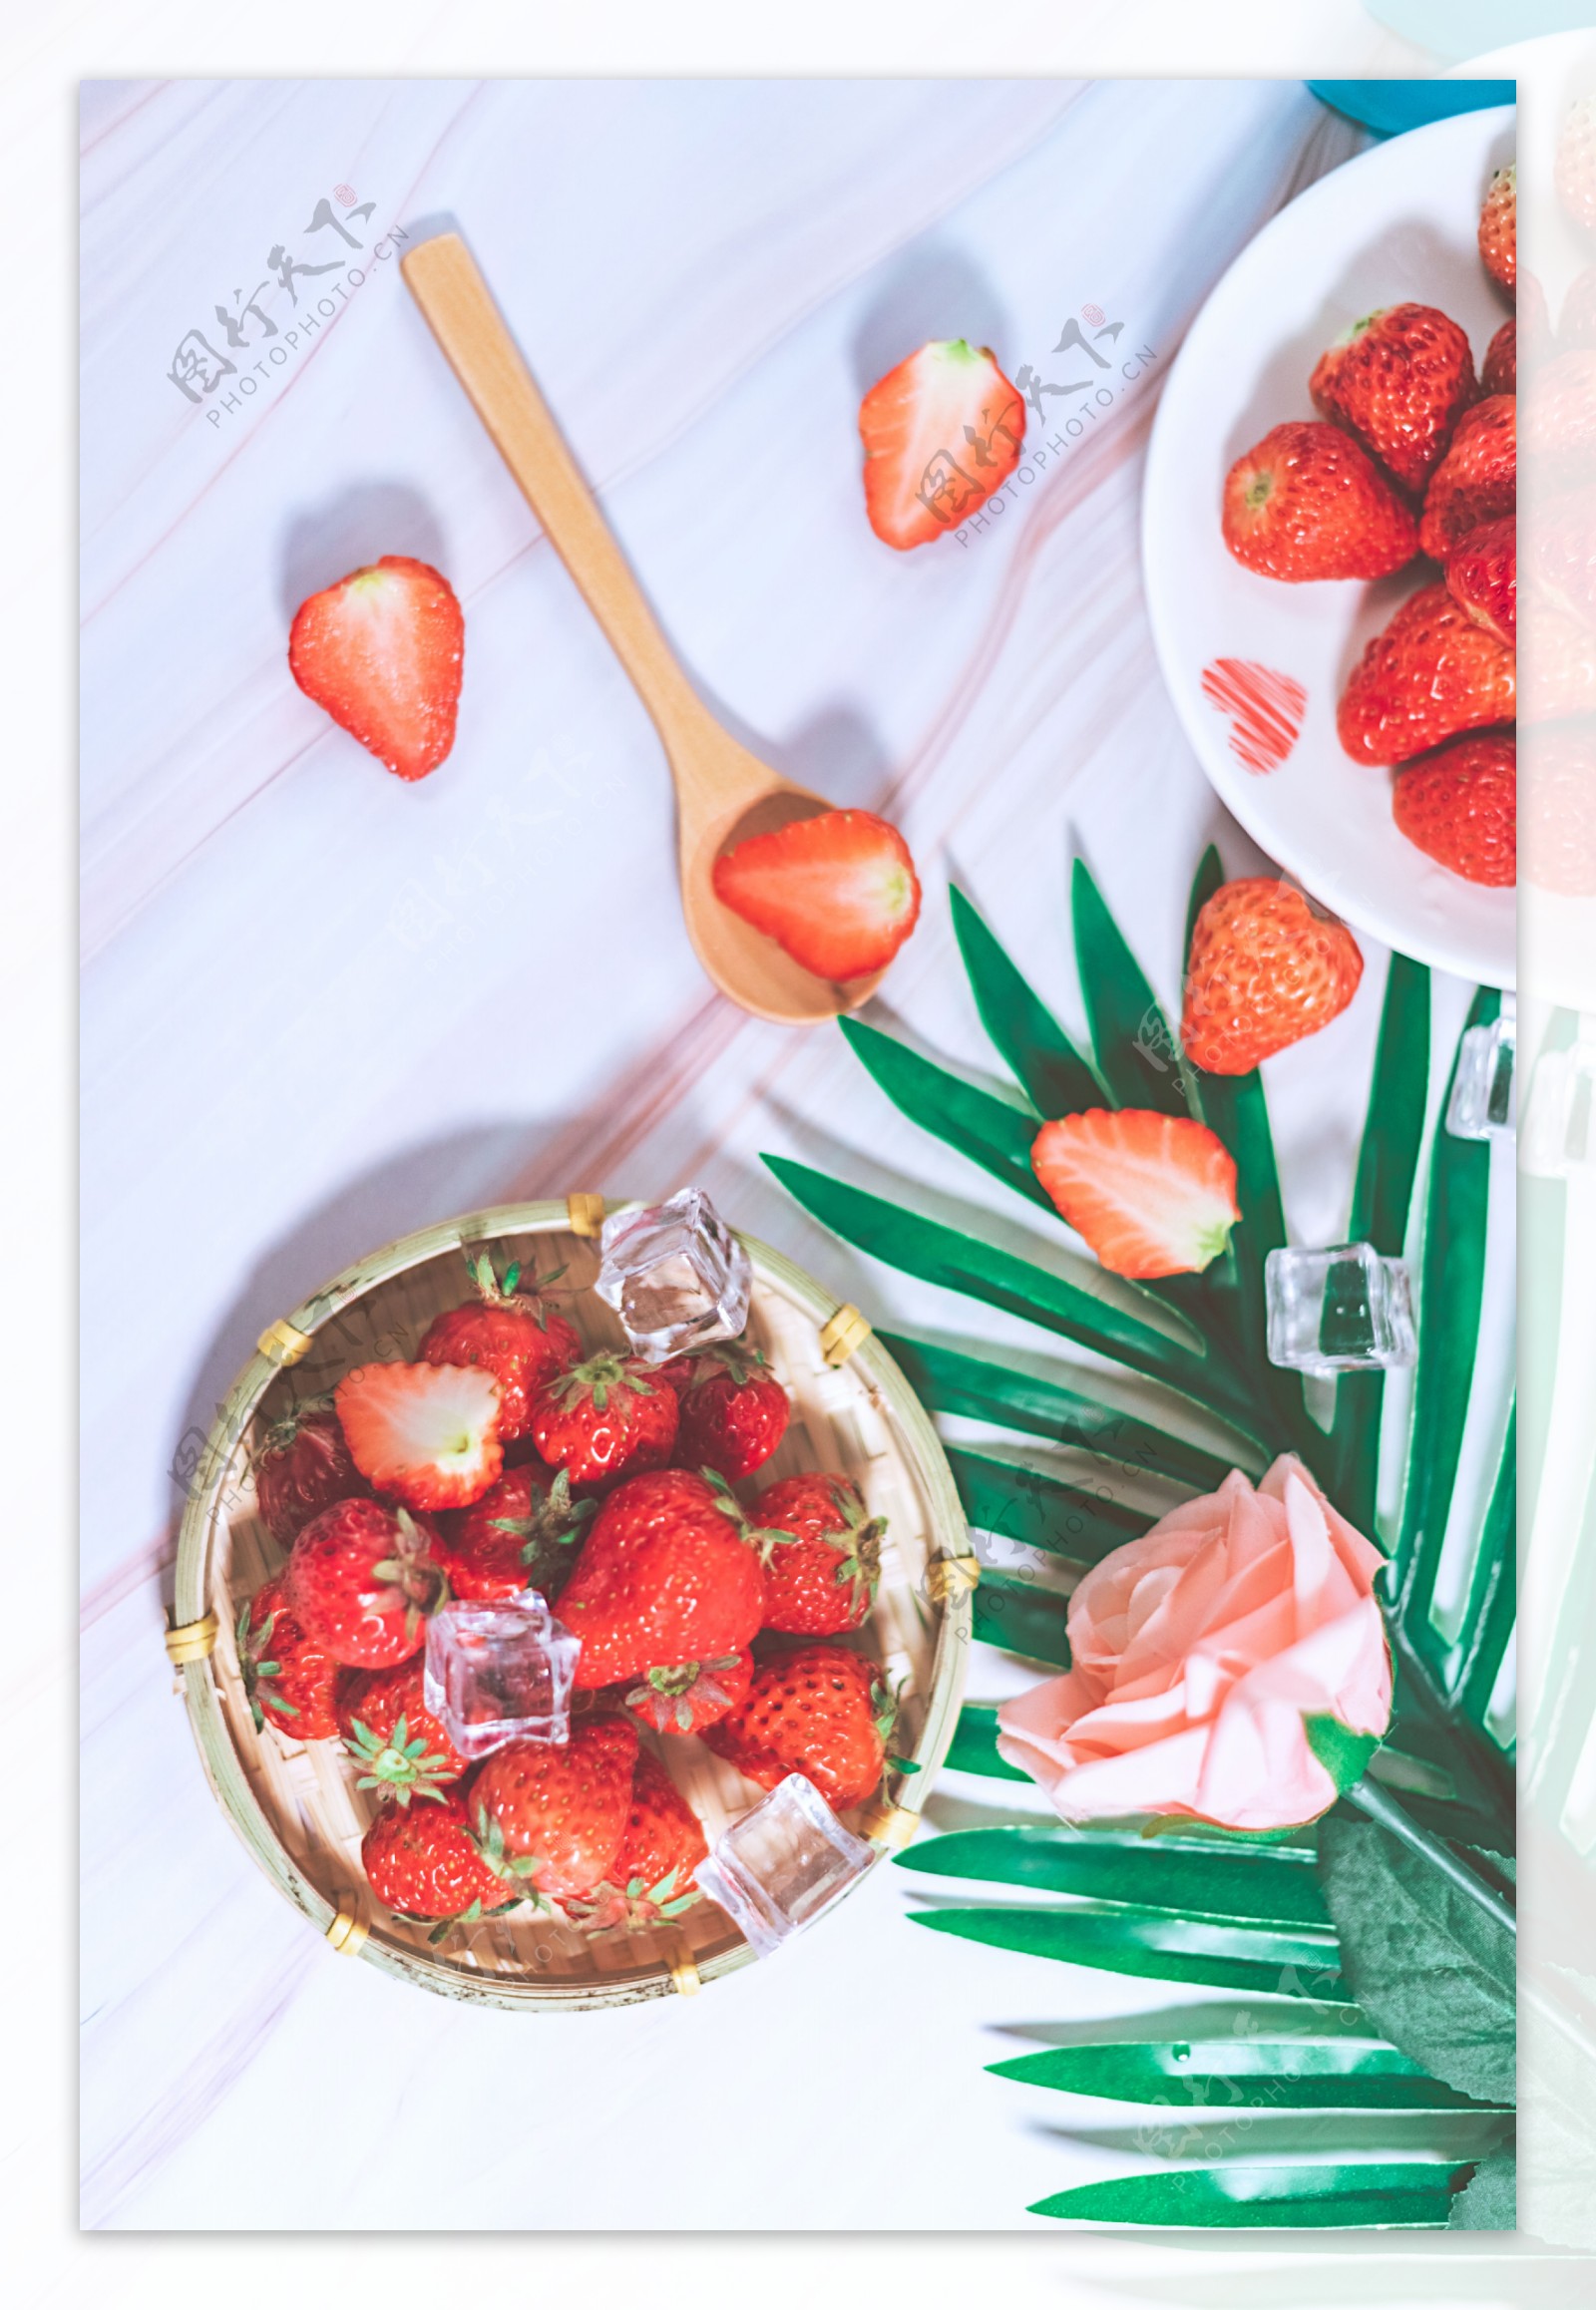 草莓小清新草莓竖构图画面